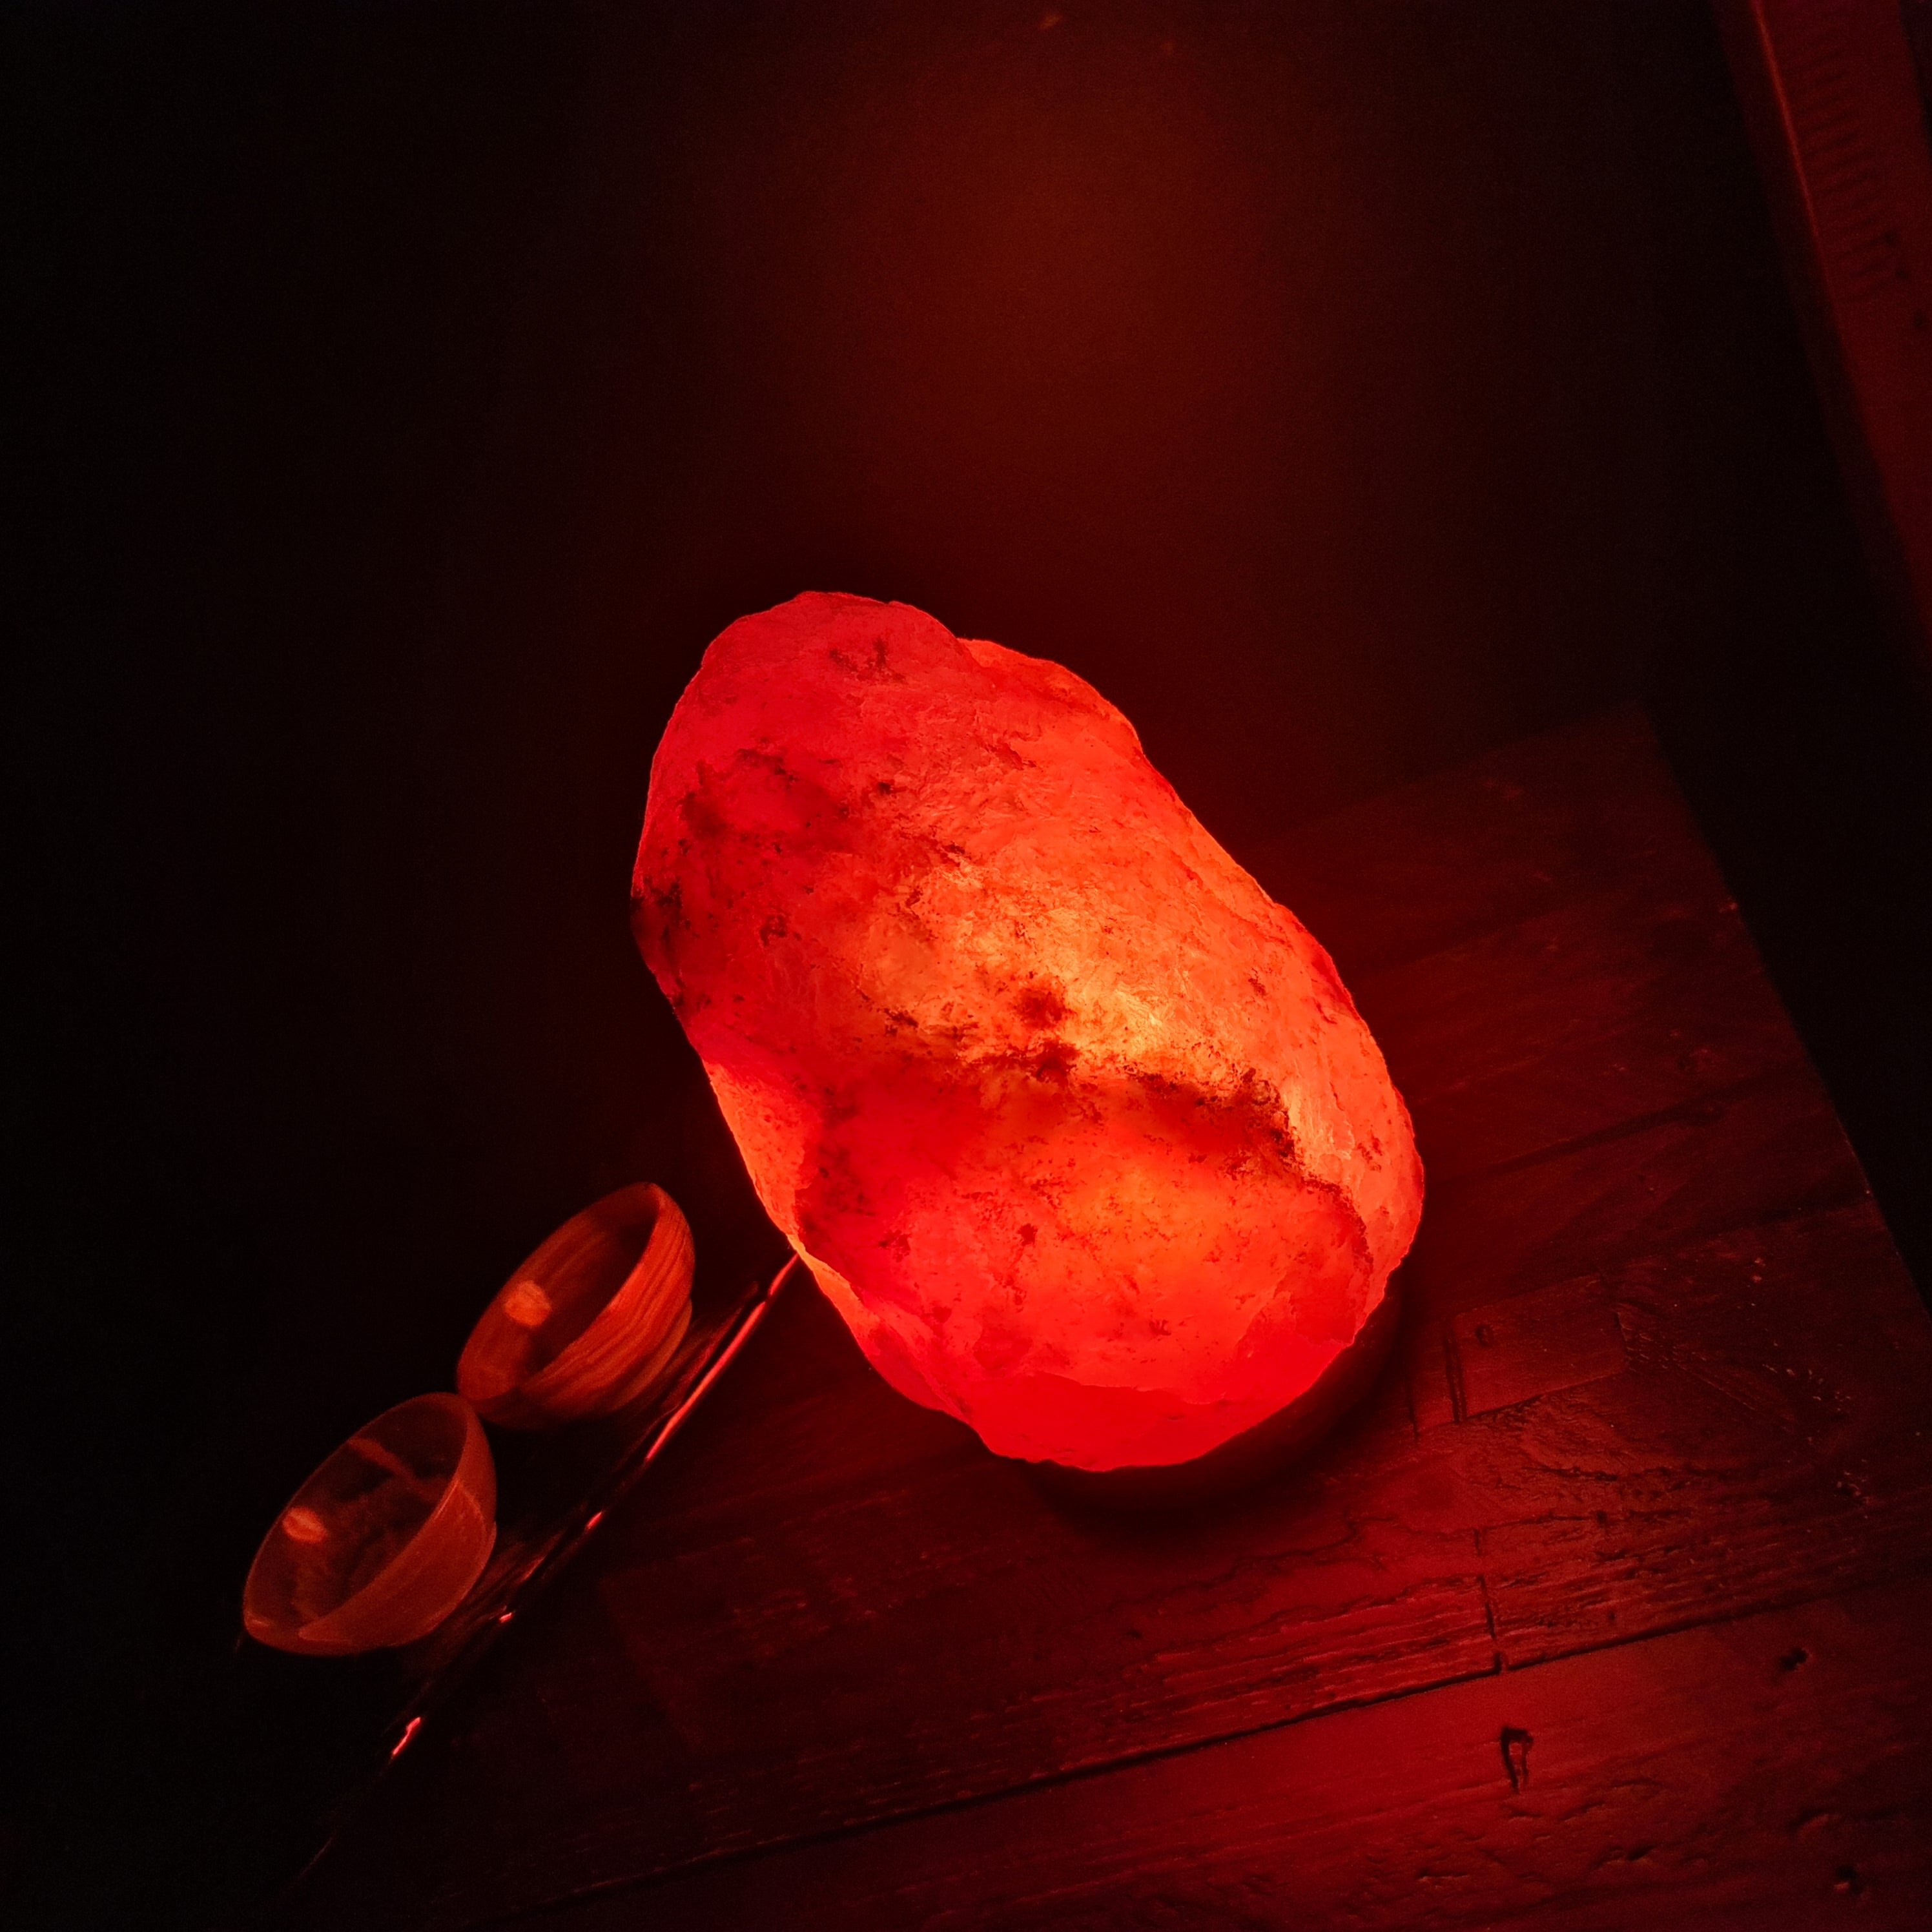 7 - 9 Kg Natural Himalayan Crystal Salt Lamp (Crafted)